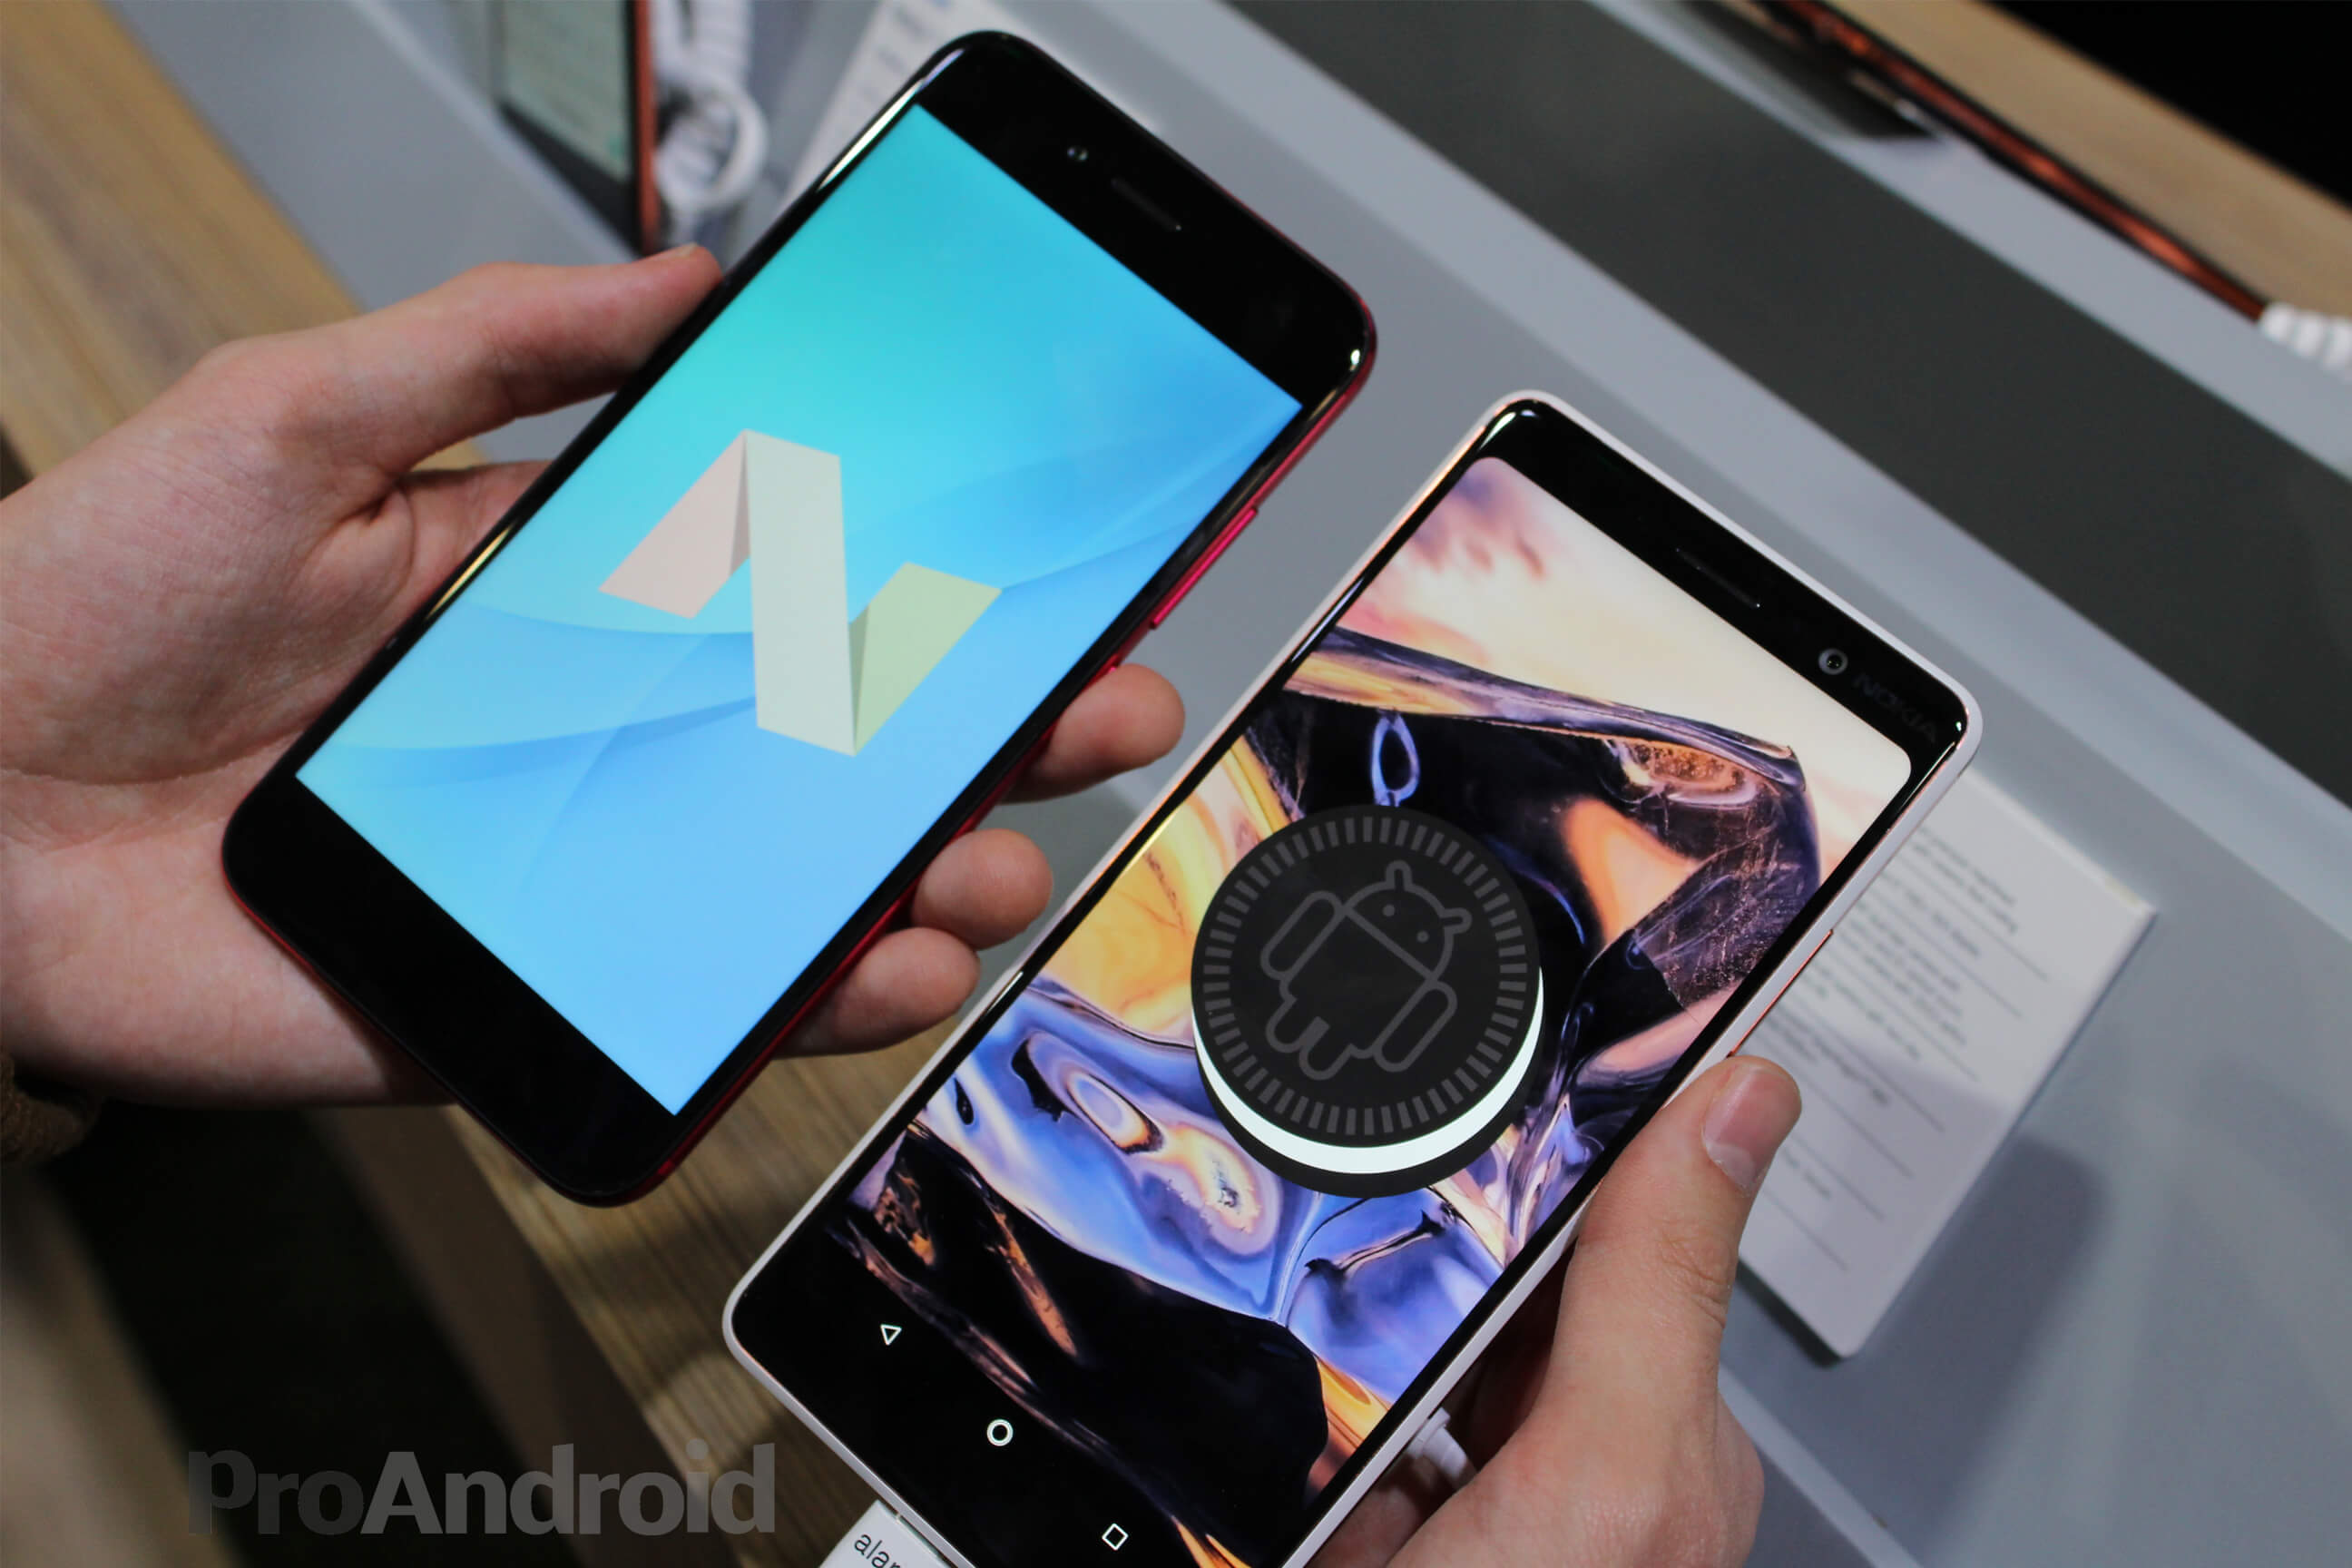 Nokia 7 Plus vs Xiaomi Mi A1 Android